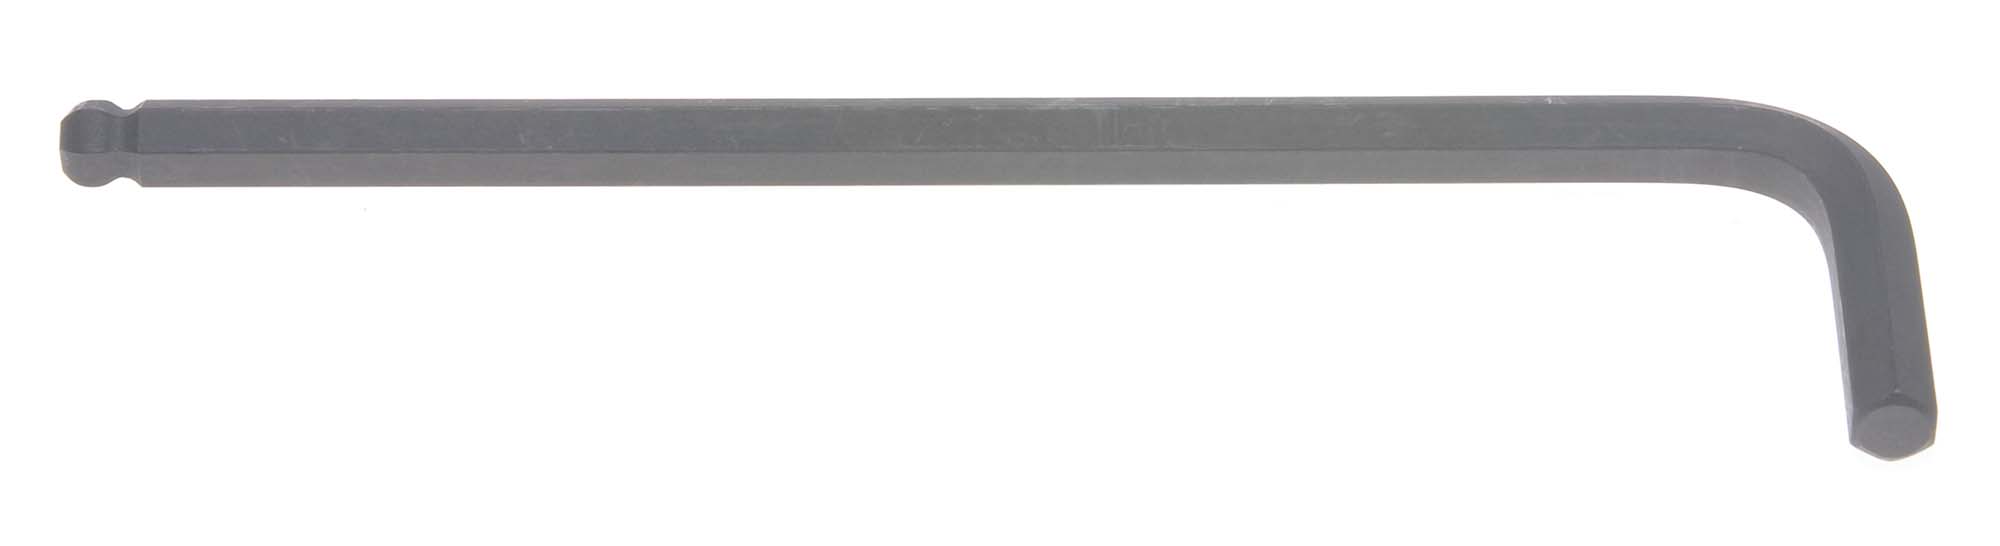 5mm Bondhus Balldriver L-Wrench Hex Key